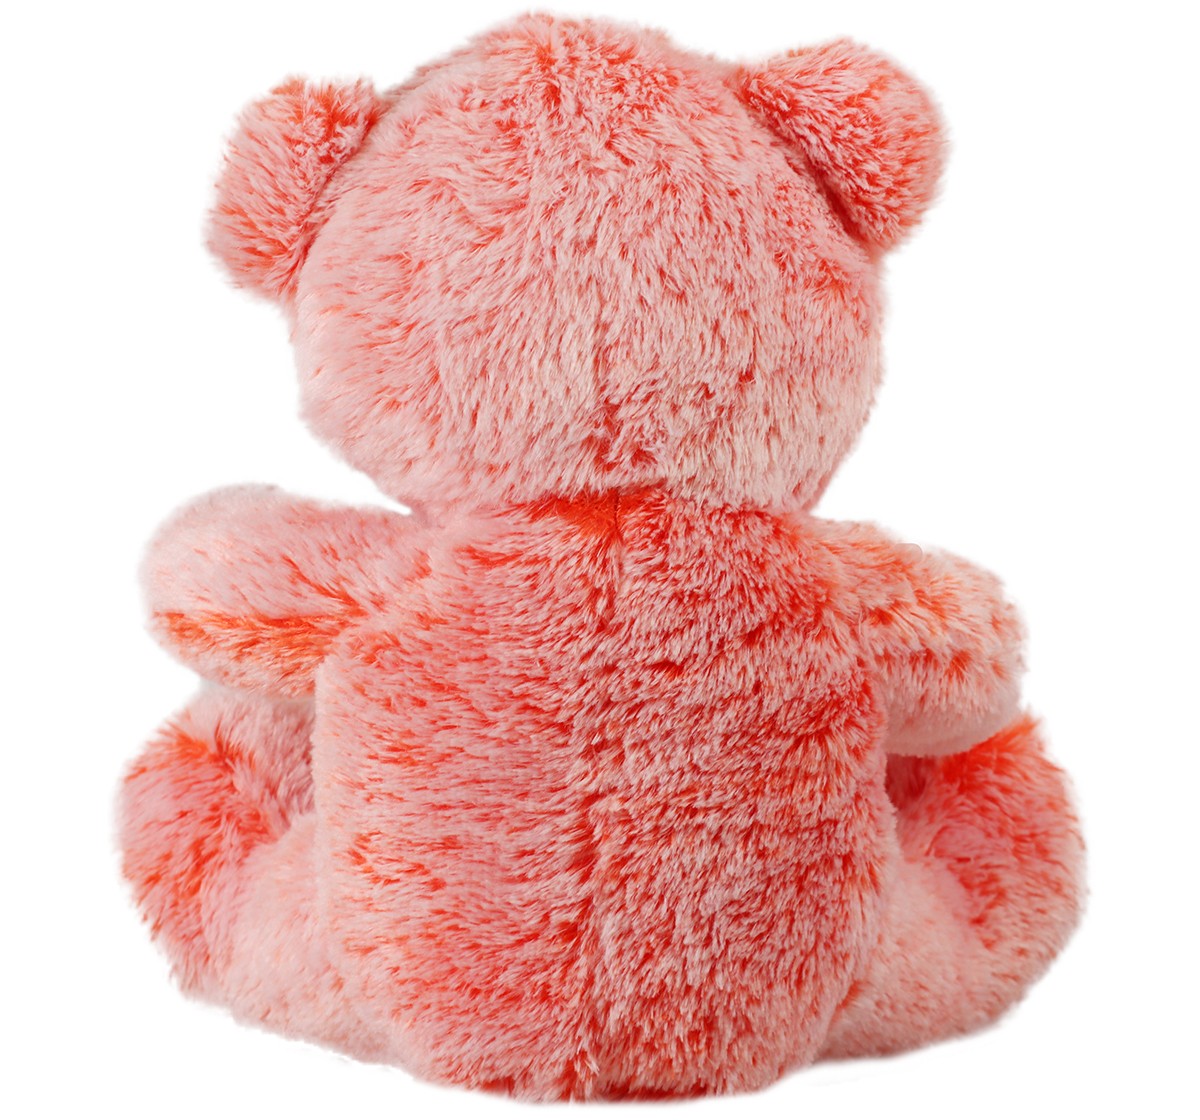 Mirada 32cm sitting bear soft toy Multicolor 3Y+